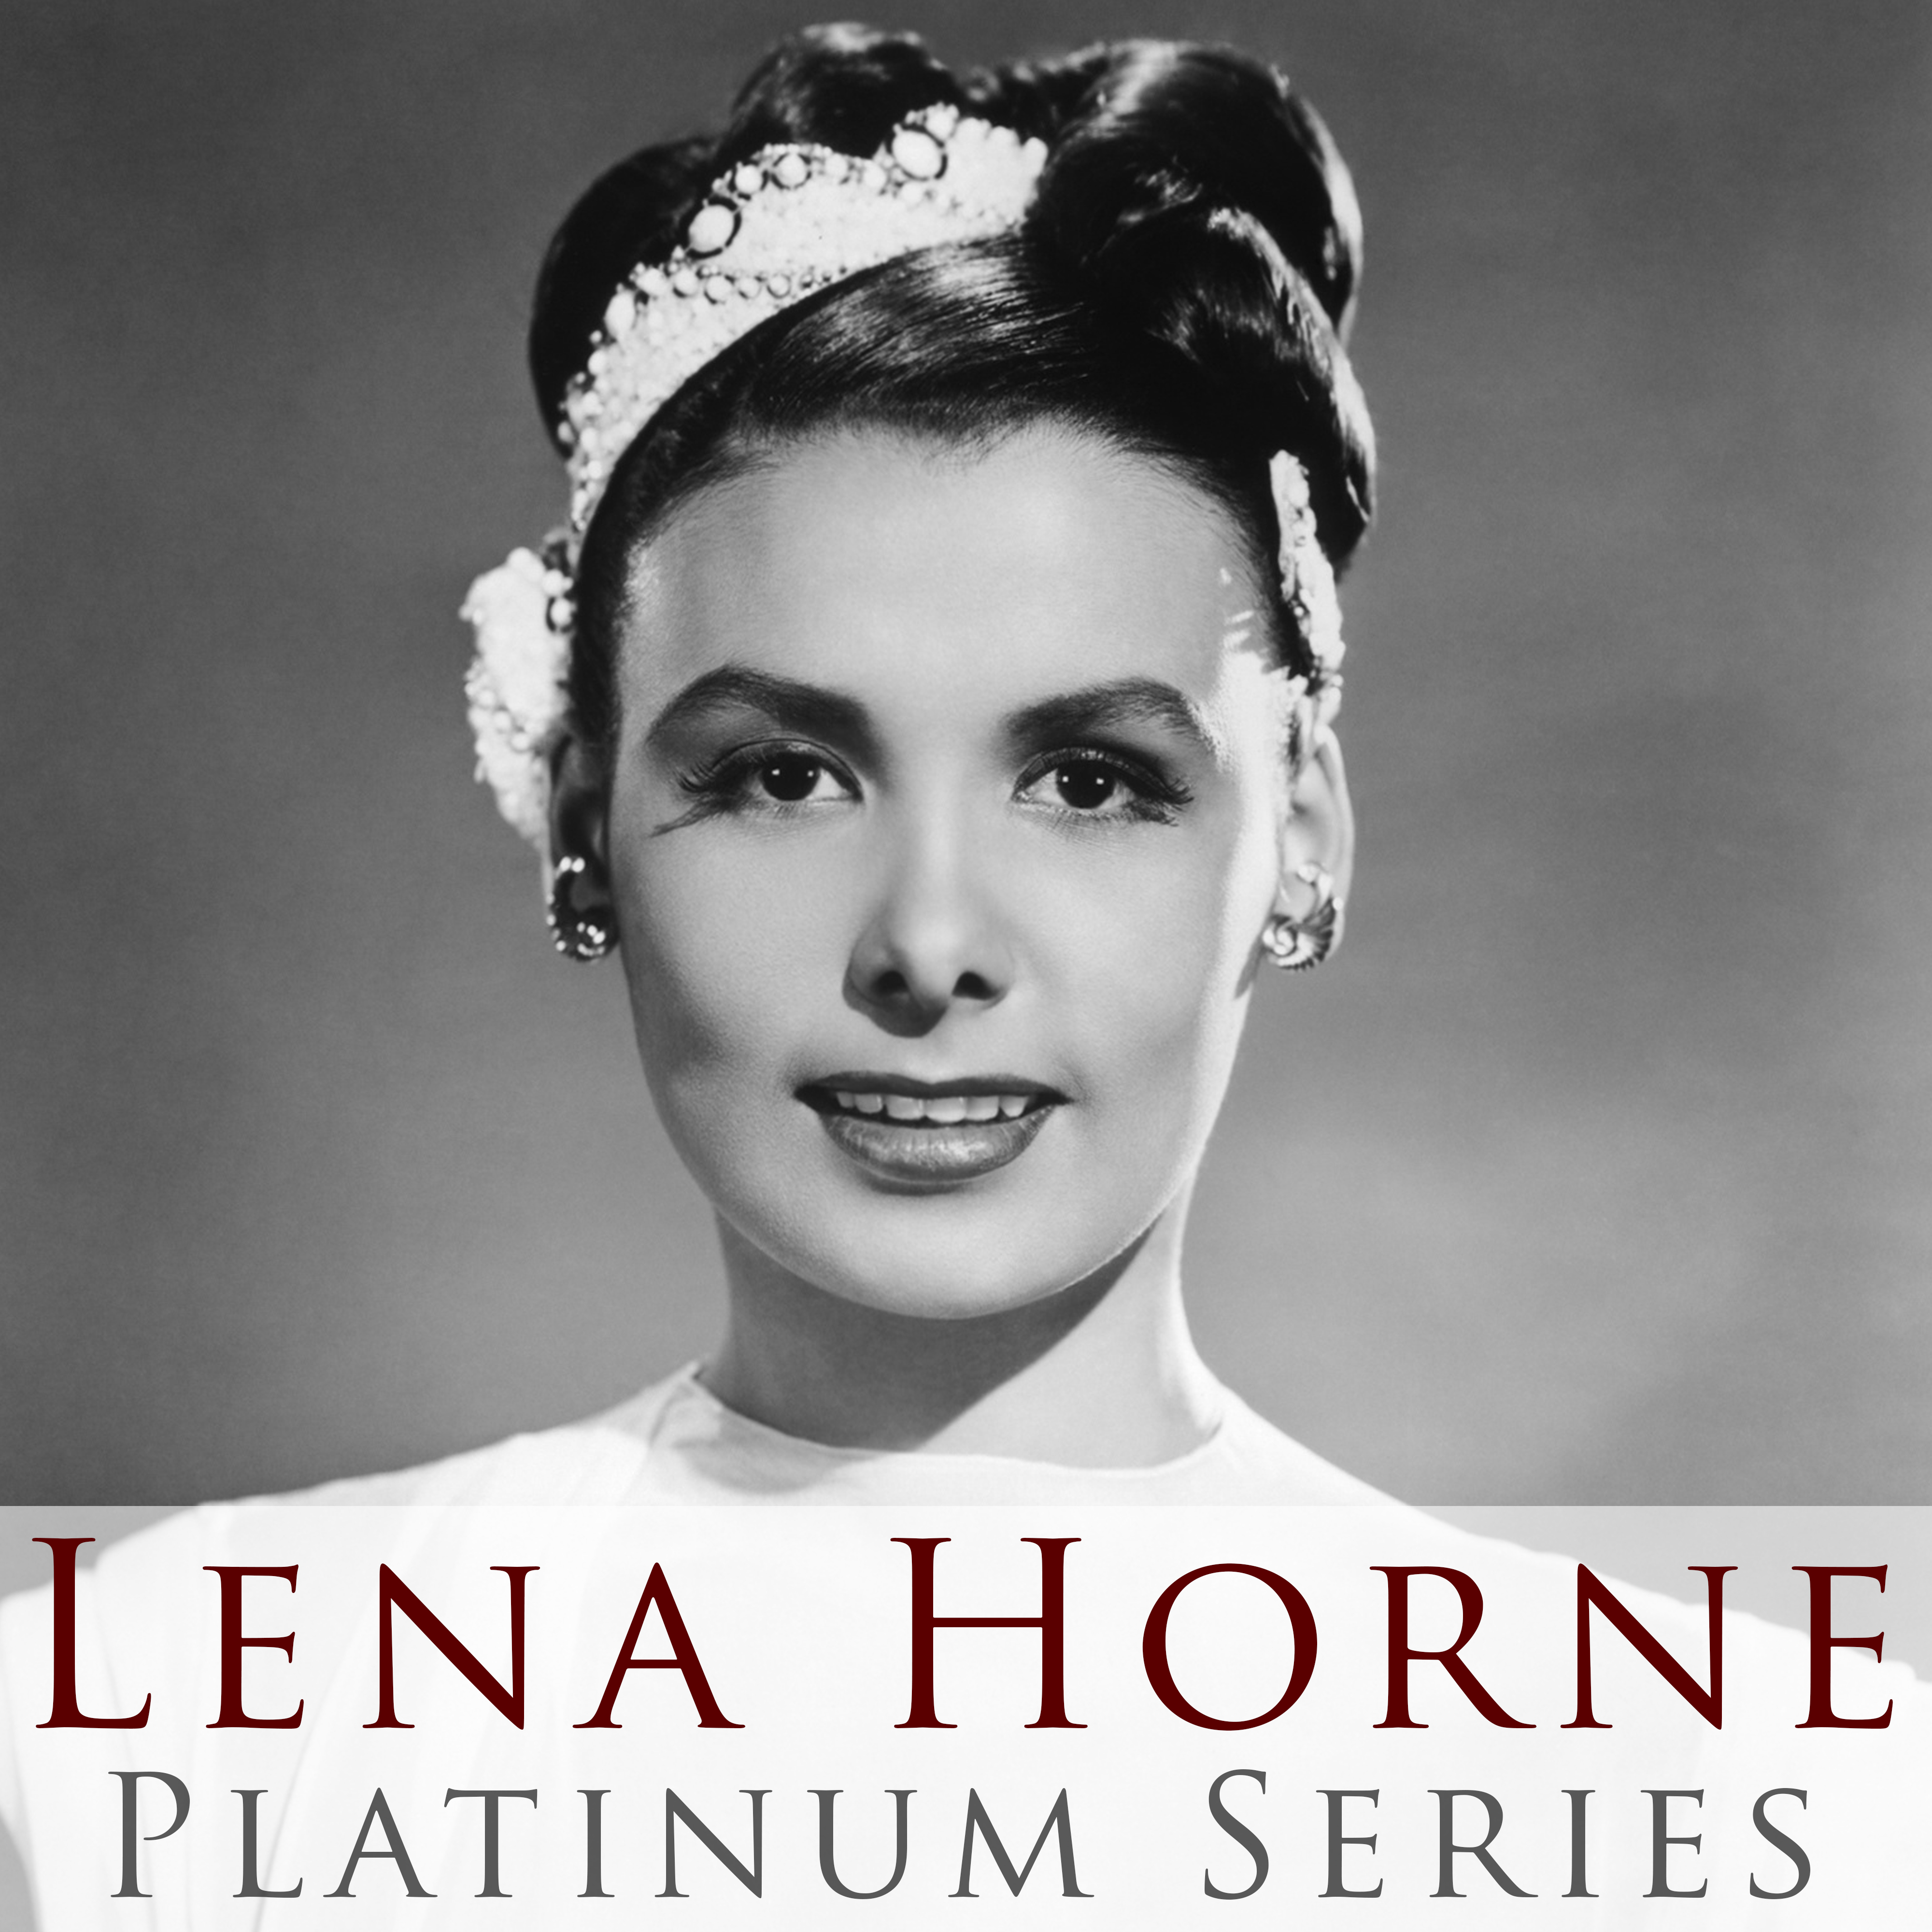 Platinum Series: Lena Horne